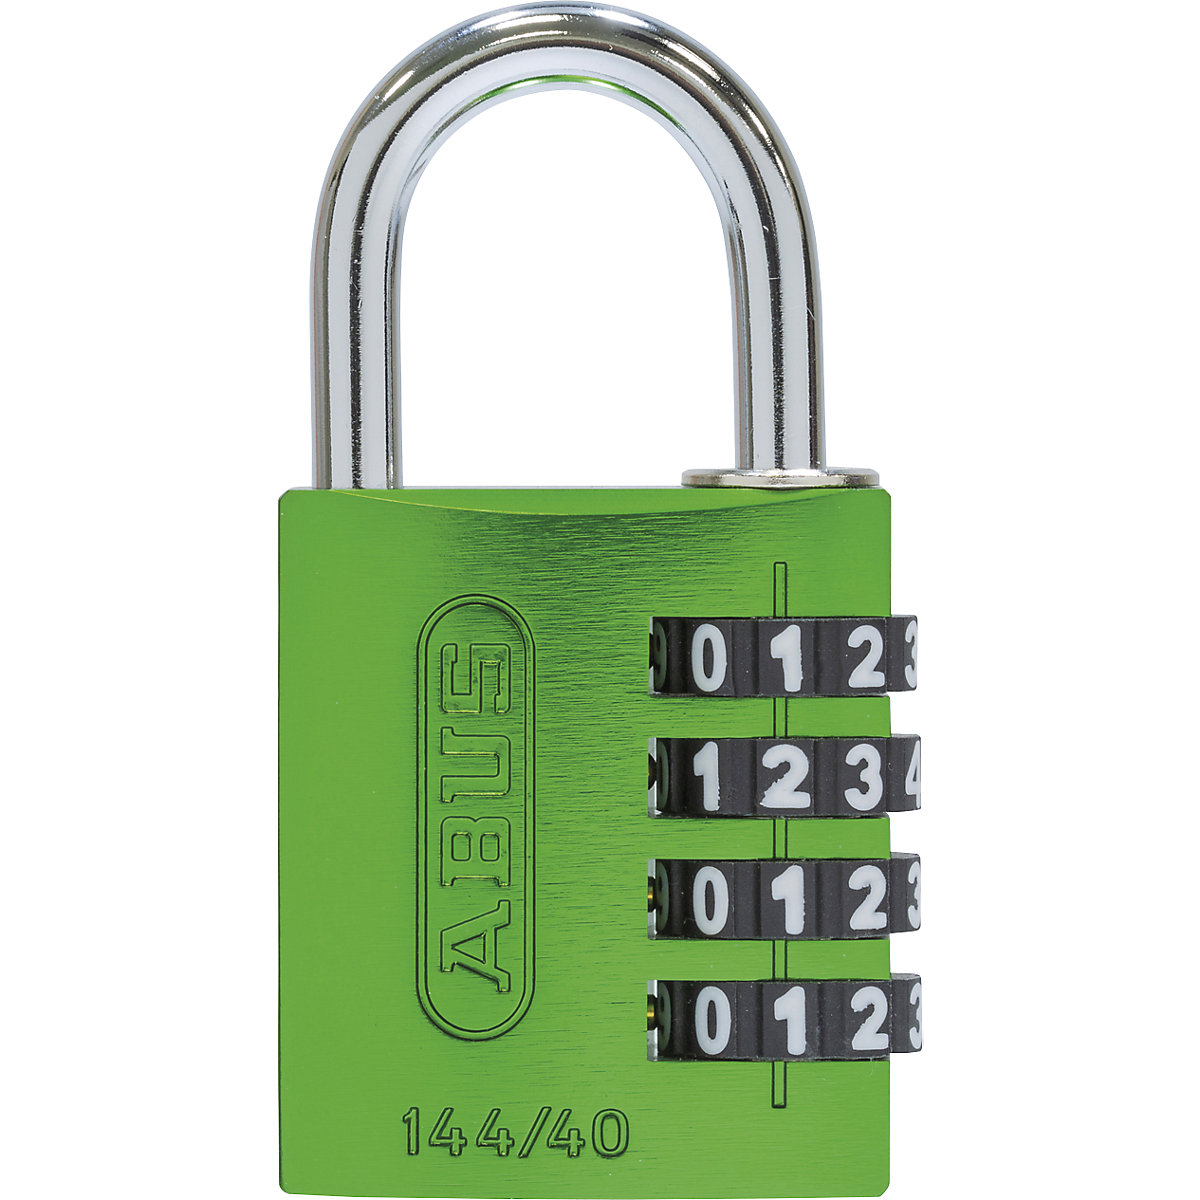 Brava s kombinacijom brojeva, aluminijska – ABUS, 144/40 Lock-Tag, pak. 6 kom., u zelenoj boji-6